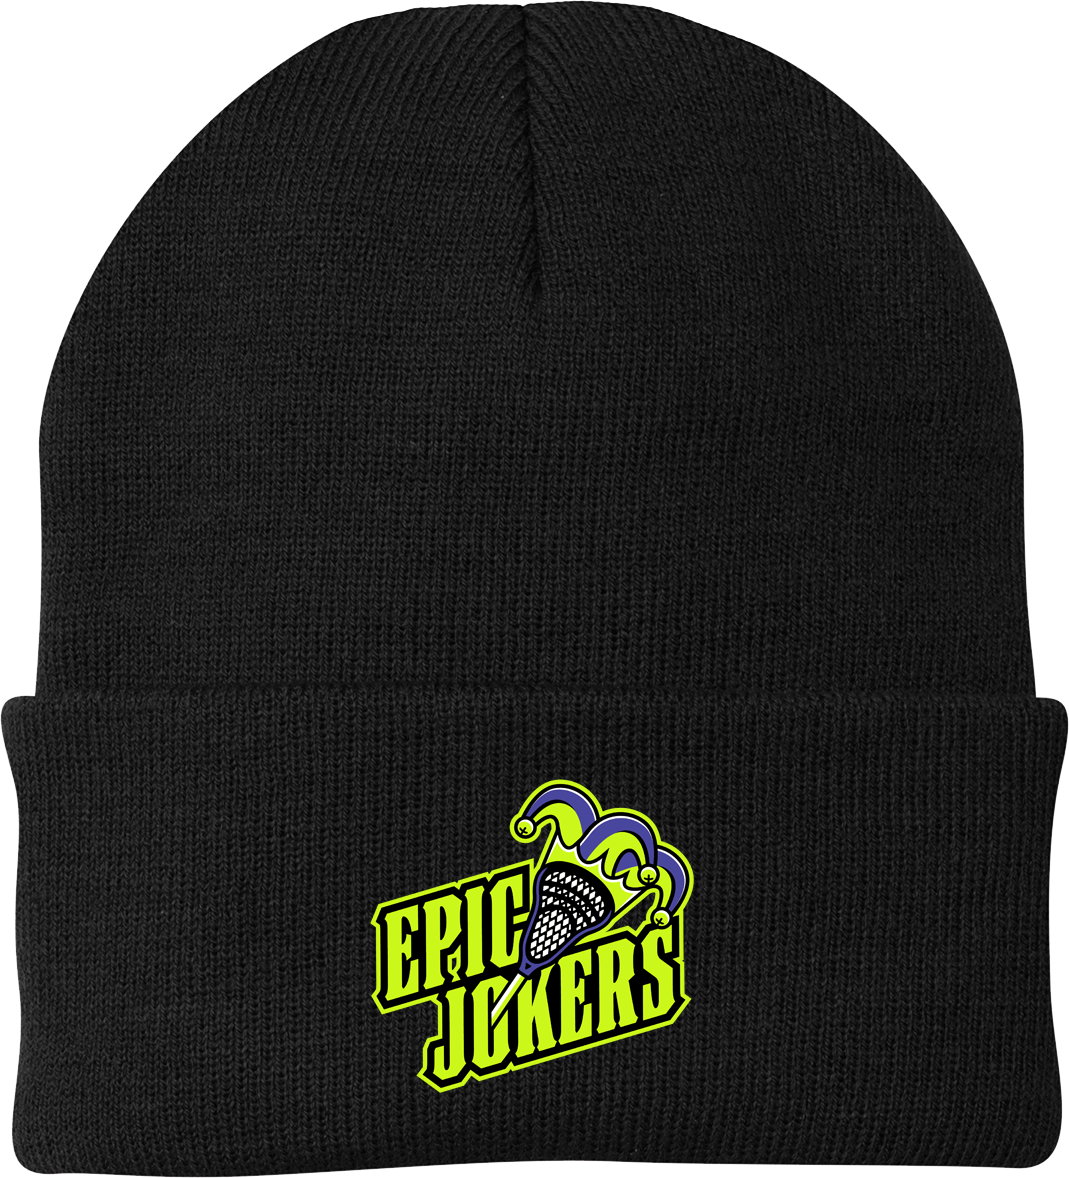 Epic Jokers Lacrosse Black Knit Beanie